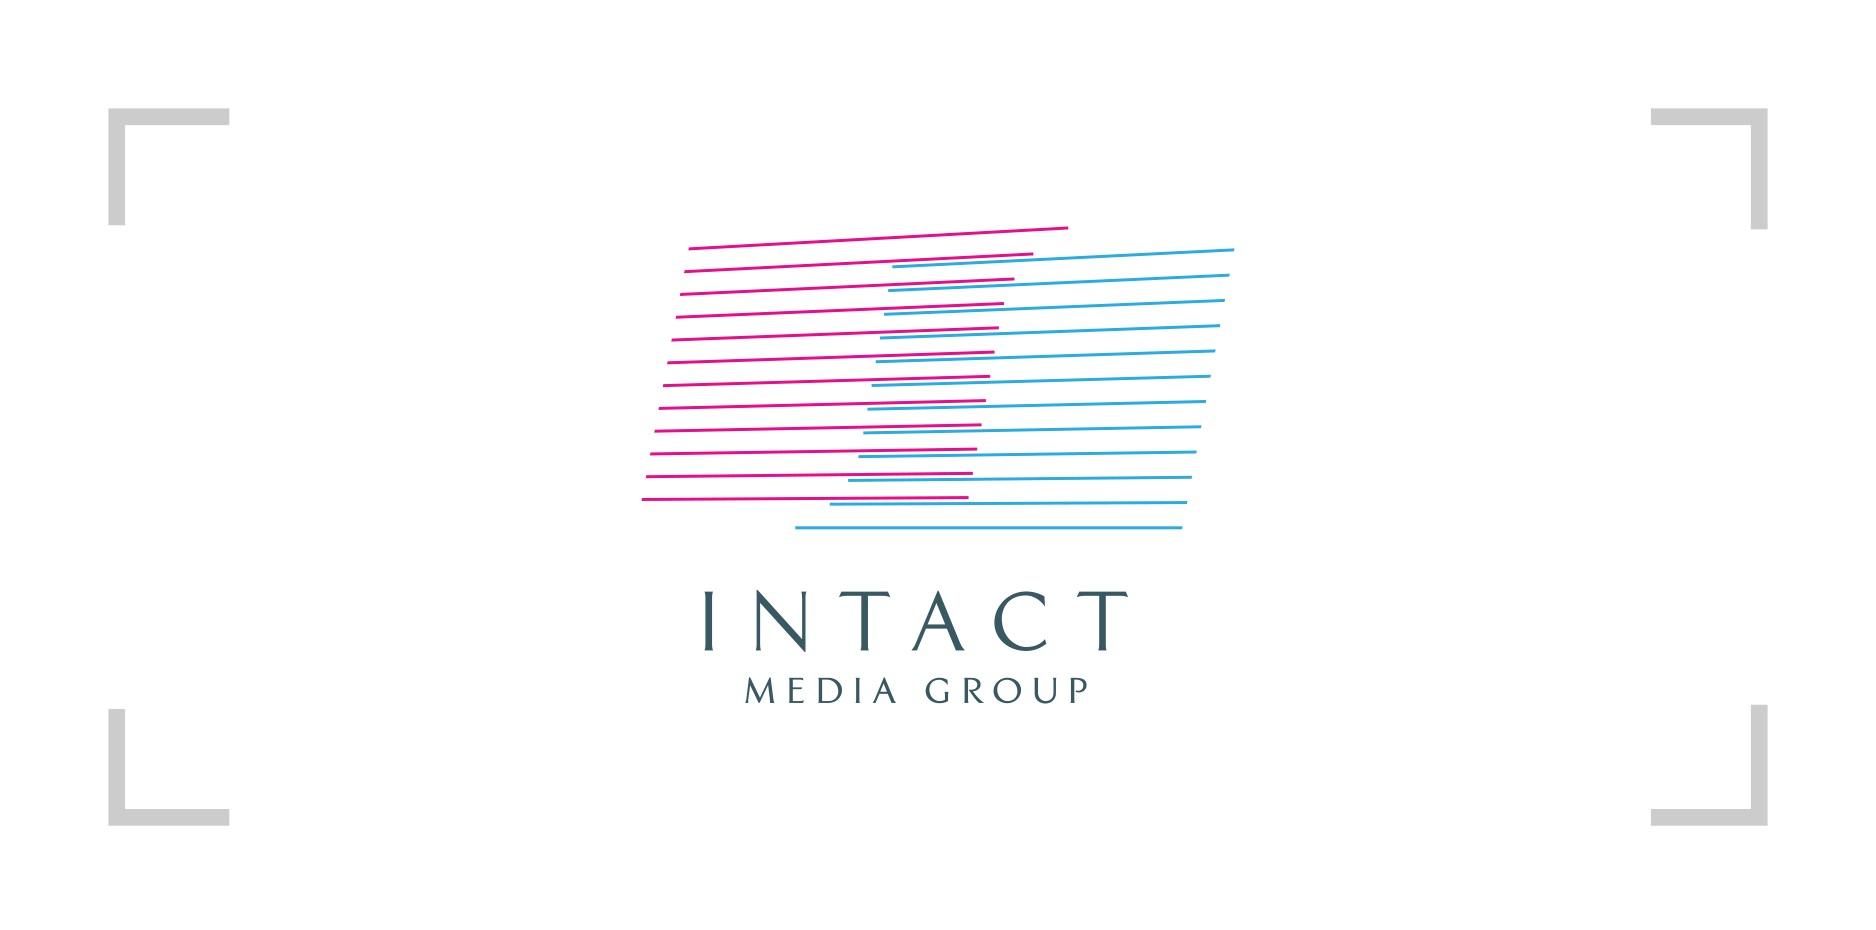 Trei televiziuni Intact în top 10 posturi TV pe luna noiembrie 2015